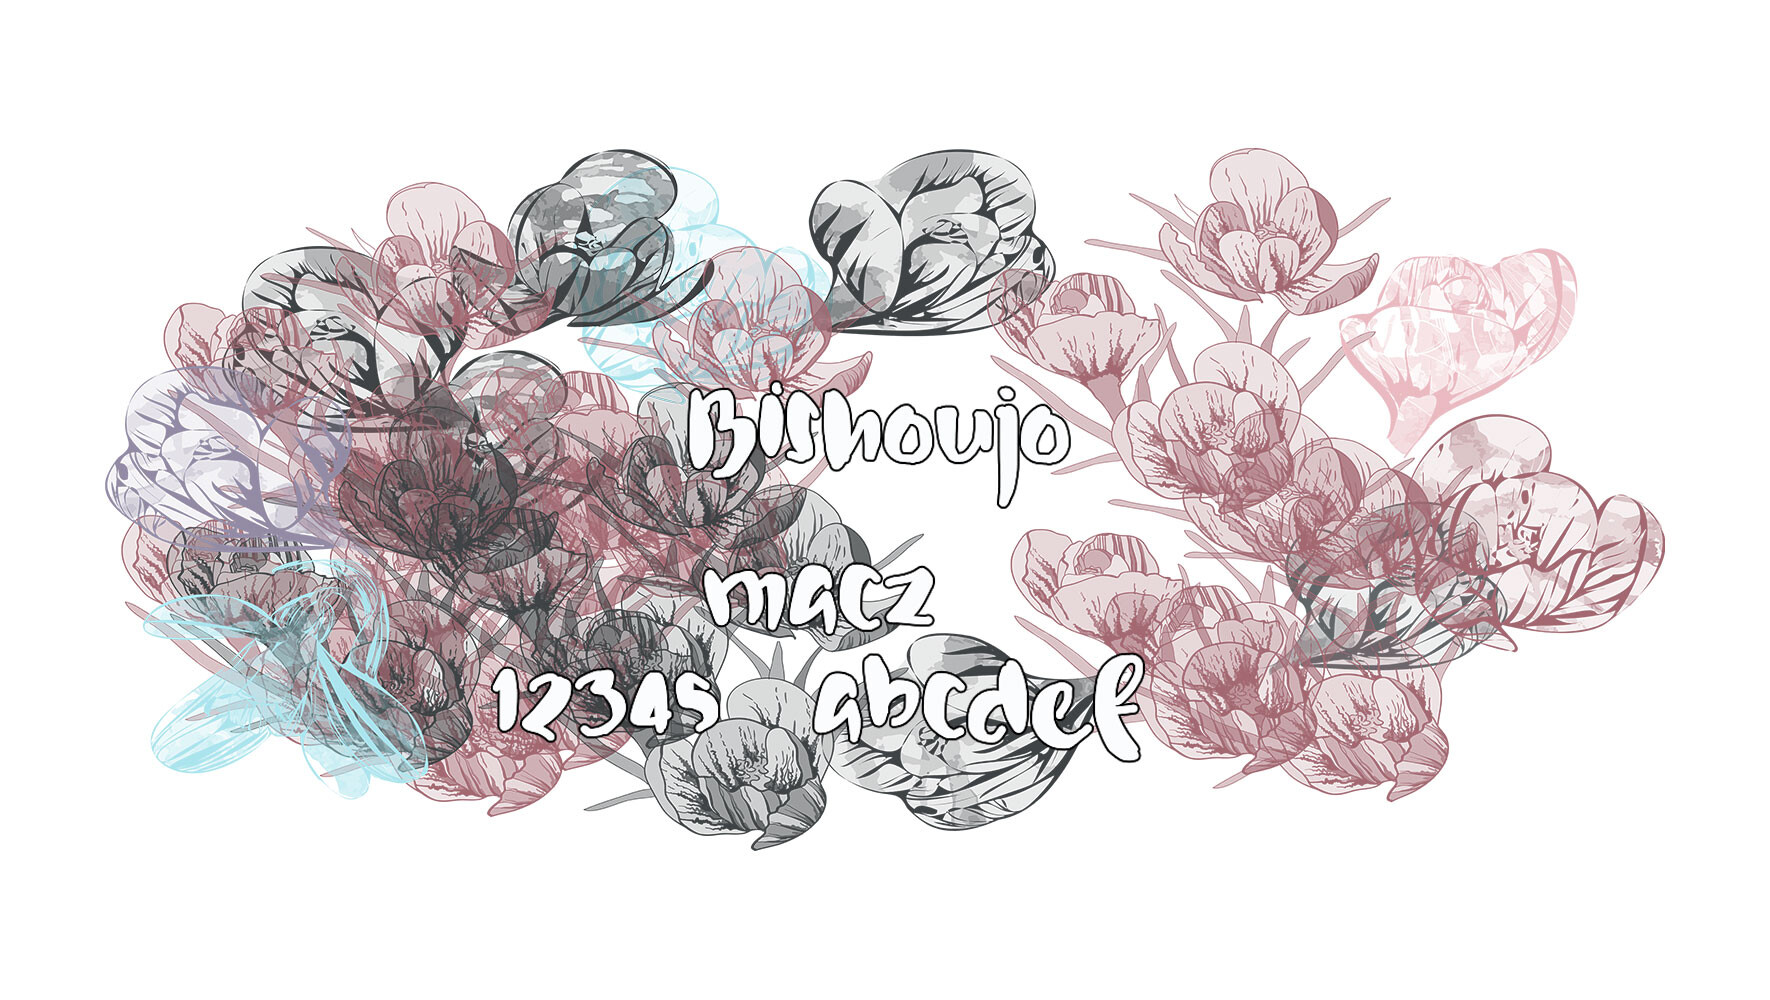 Bishoujo少女风格设计字体